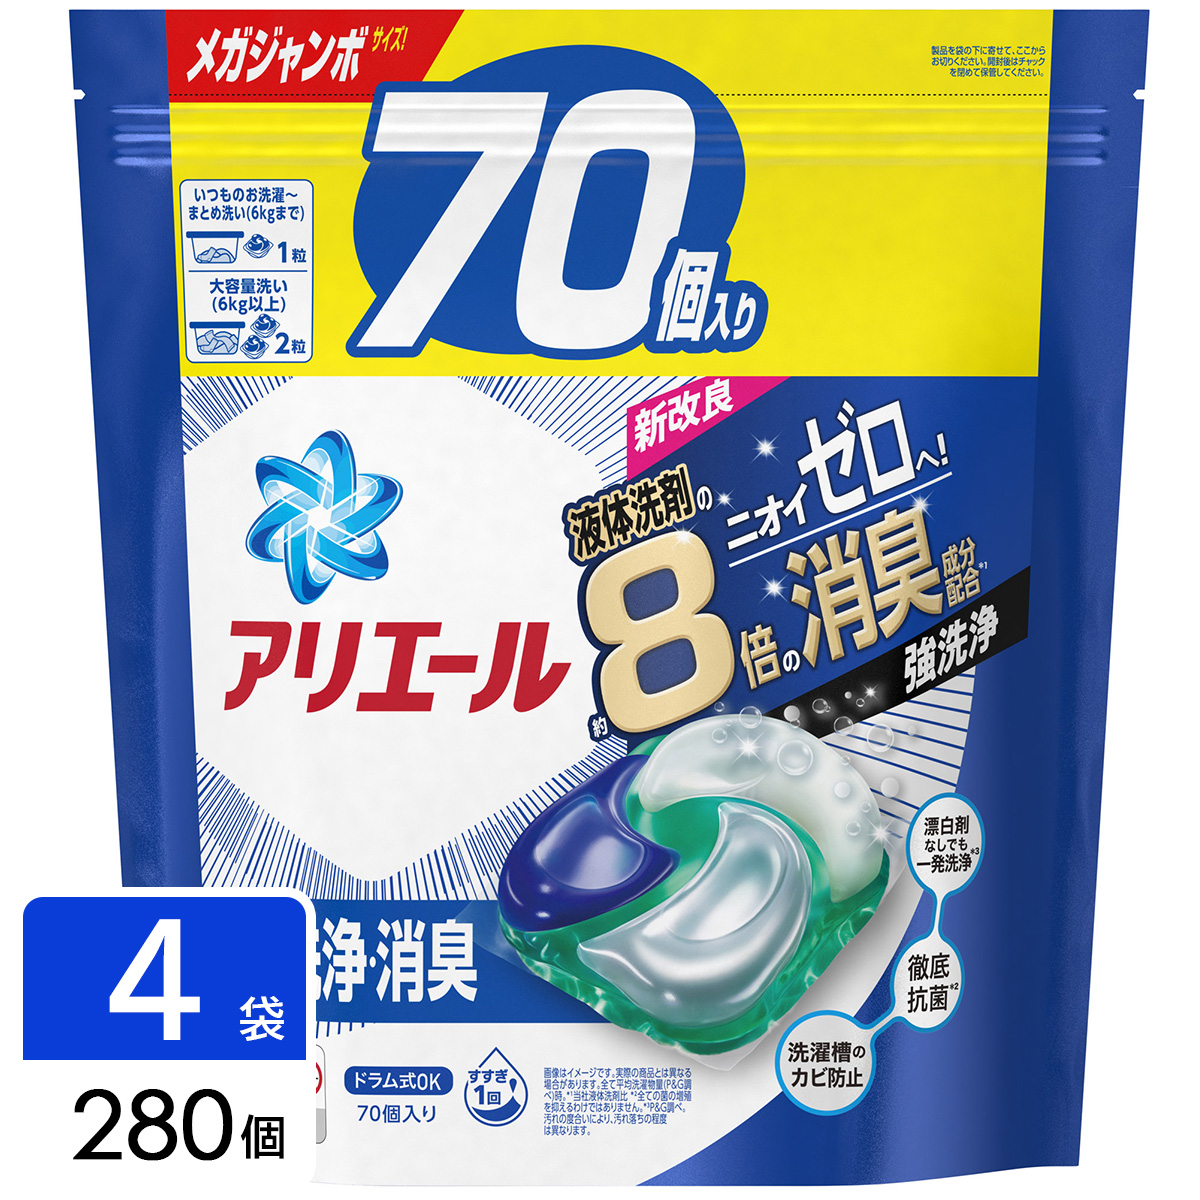 アリエール 洗濯洗剤 ジェルボール4D 詰め替え メガジャンボ 280個(70個×4袋)